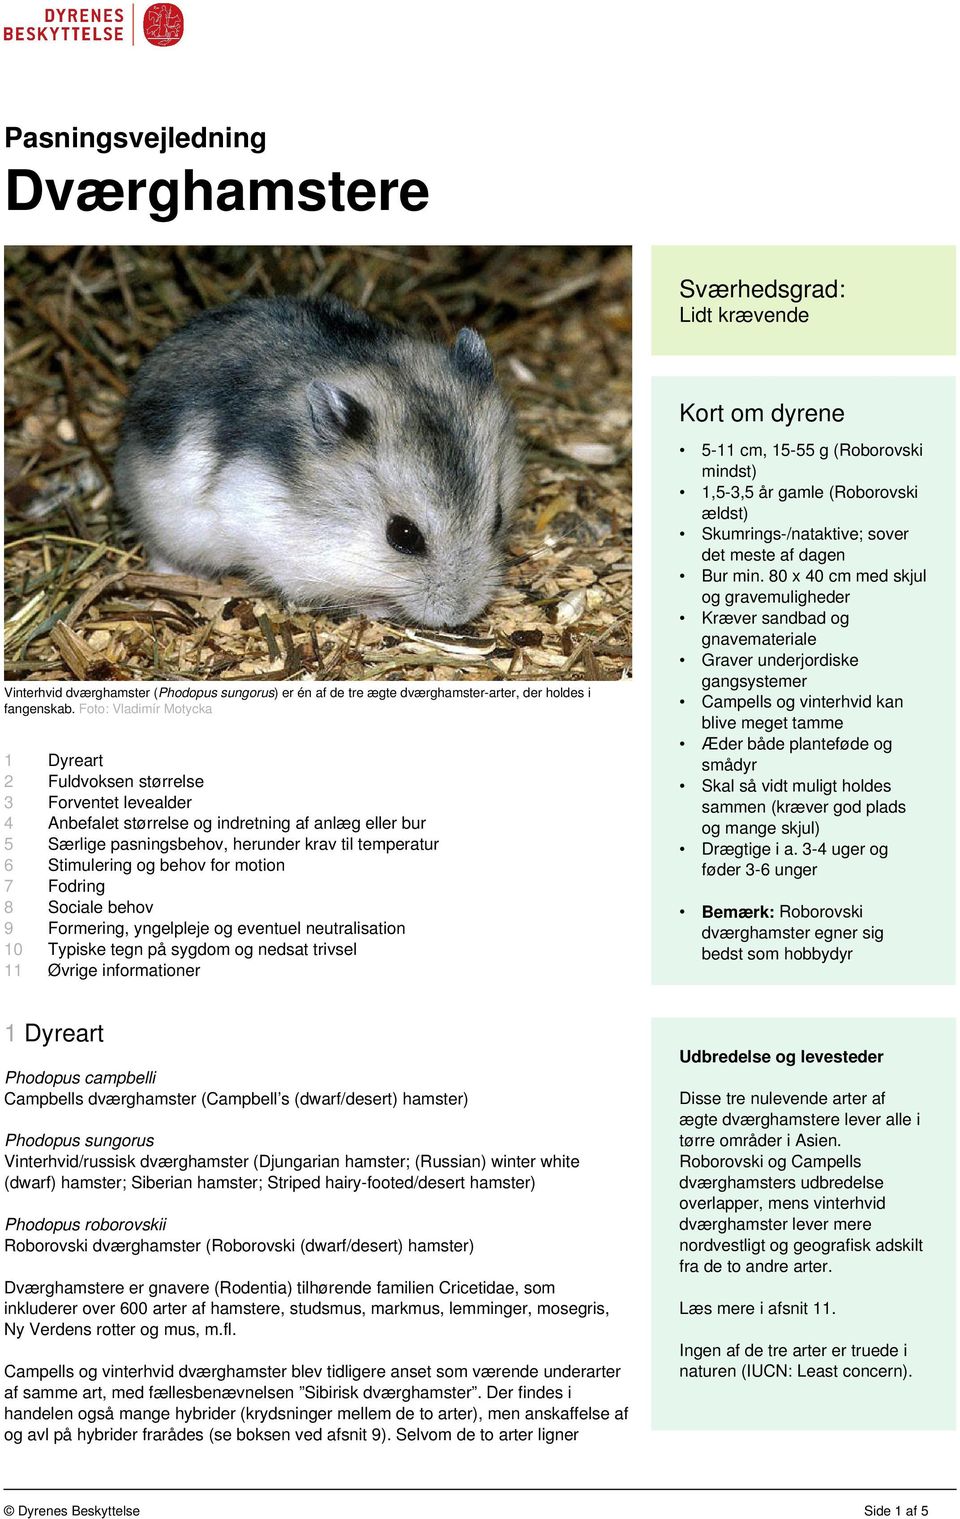 Pasningsvejledning Dværghamstere - PDF Gratis download